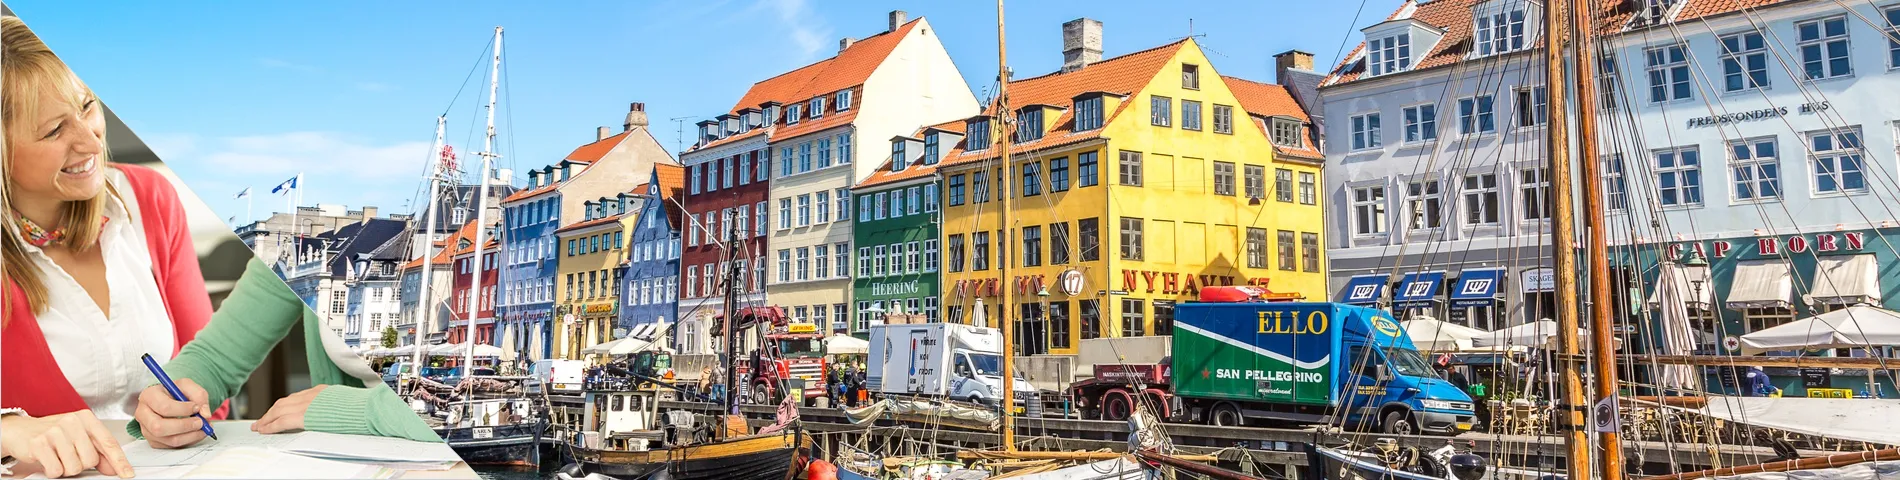 Copenhague - Estude uma língua & more na casa do seu professor